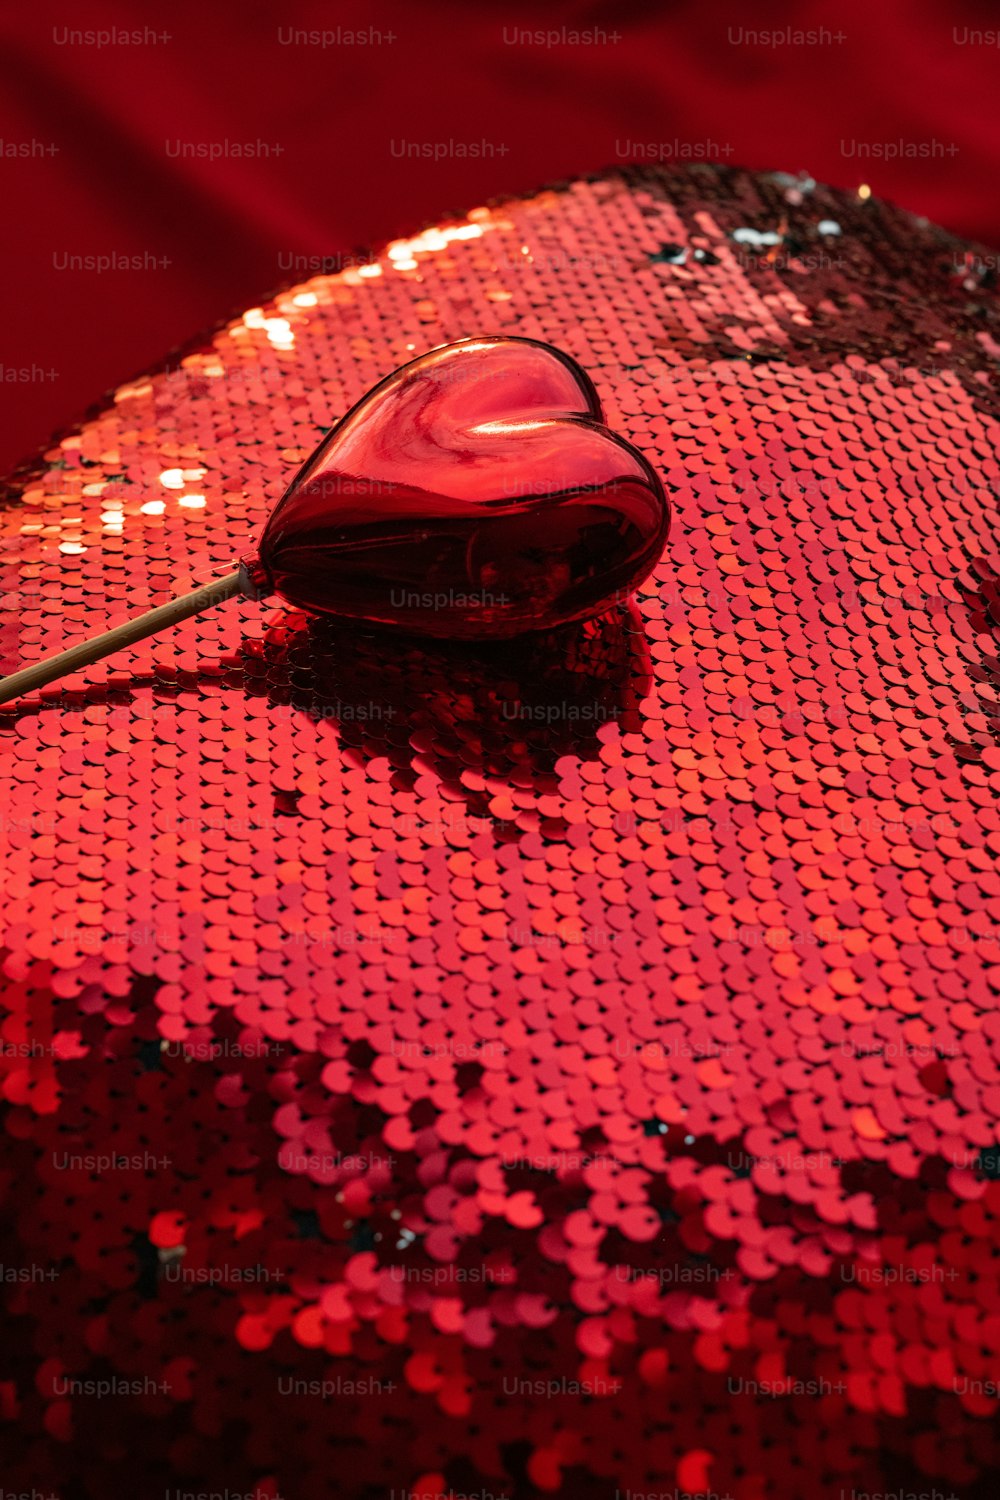 赤いスパンコール処理された表面の上に座っているコンピューターのマウス